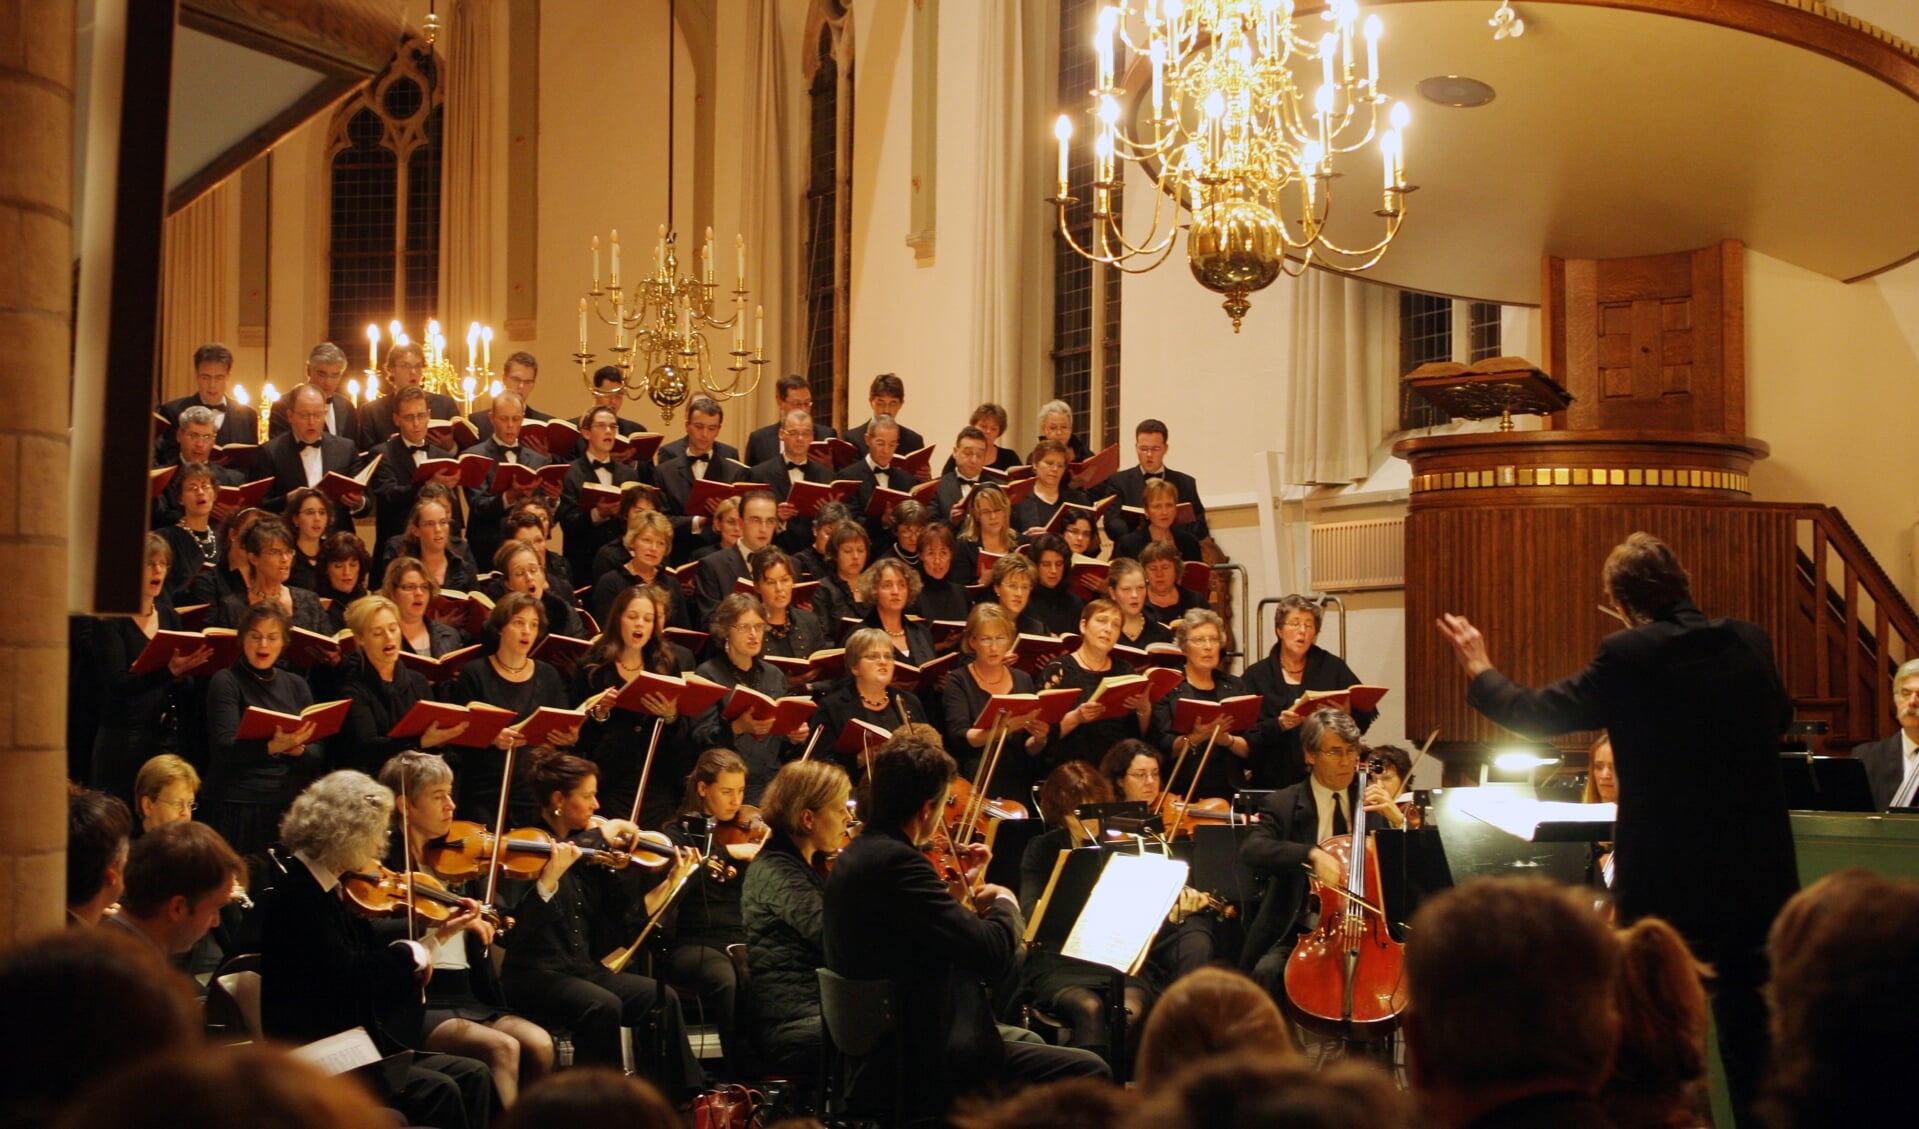 Het projectkoor zal in 15 repetities 'The Messiah' van Händel instuderen en tijdens het concert op 15 december in de Grote Kerk van Middelharnis ten gehore brengen. 